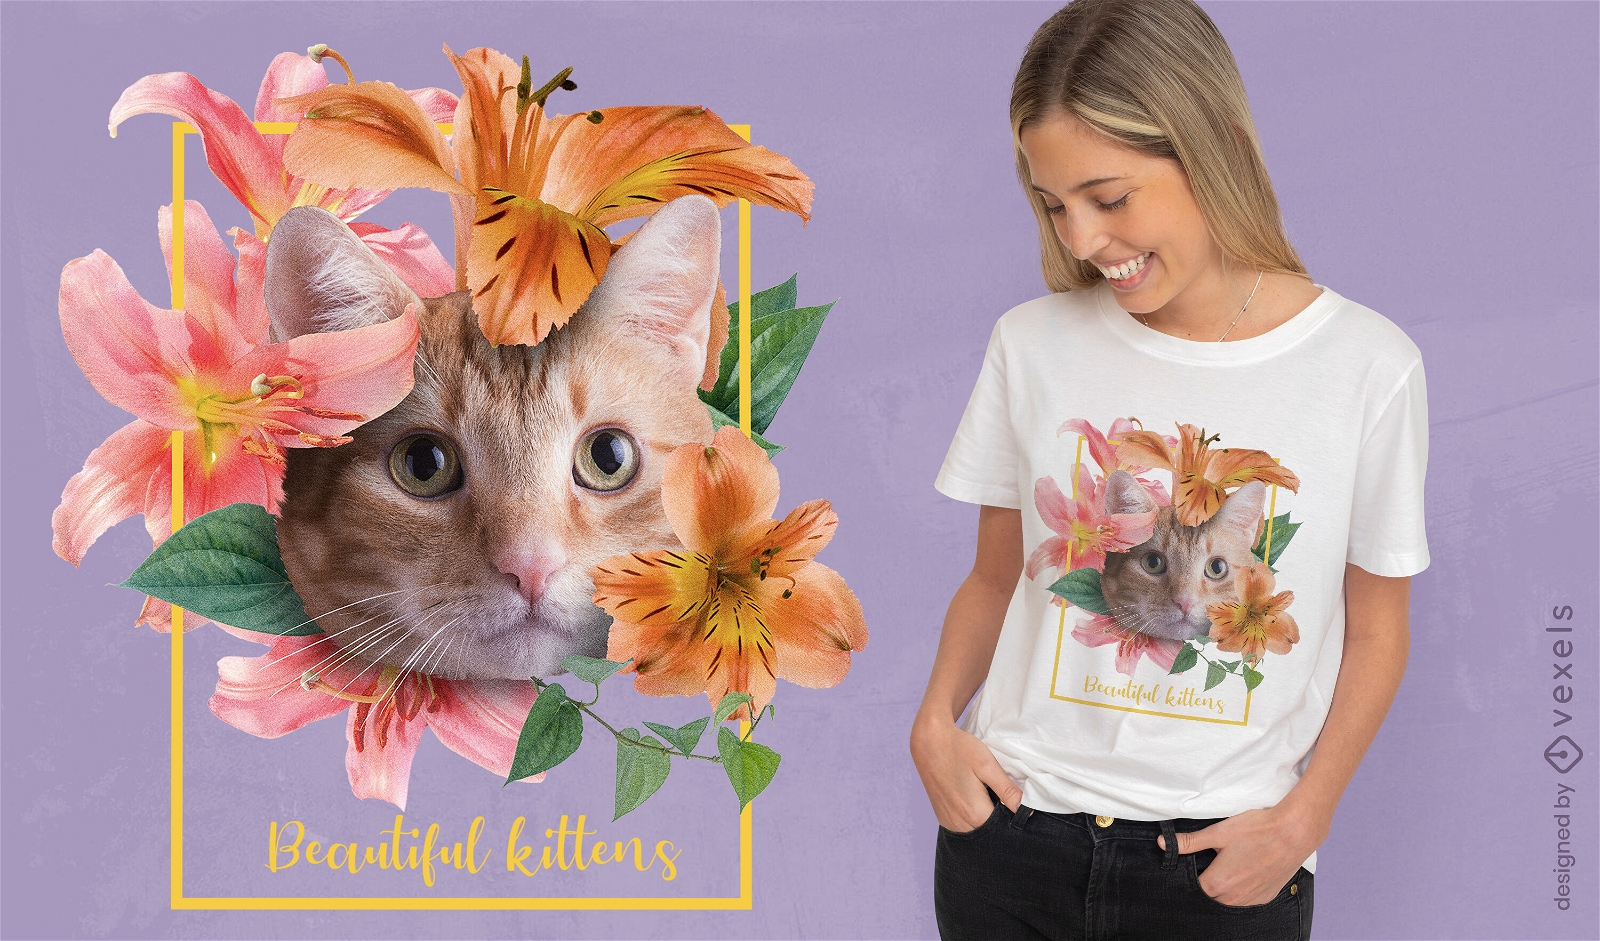 Cute kitten cat with flowers t-shirt psd